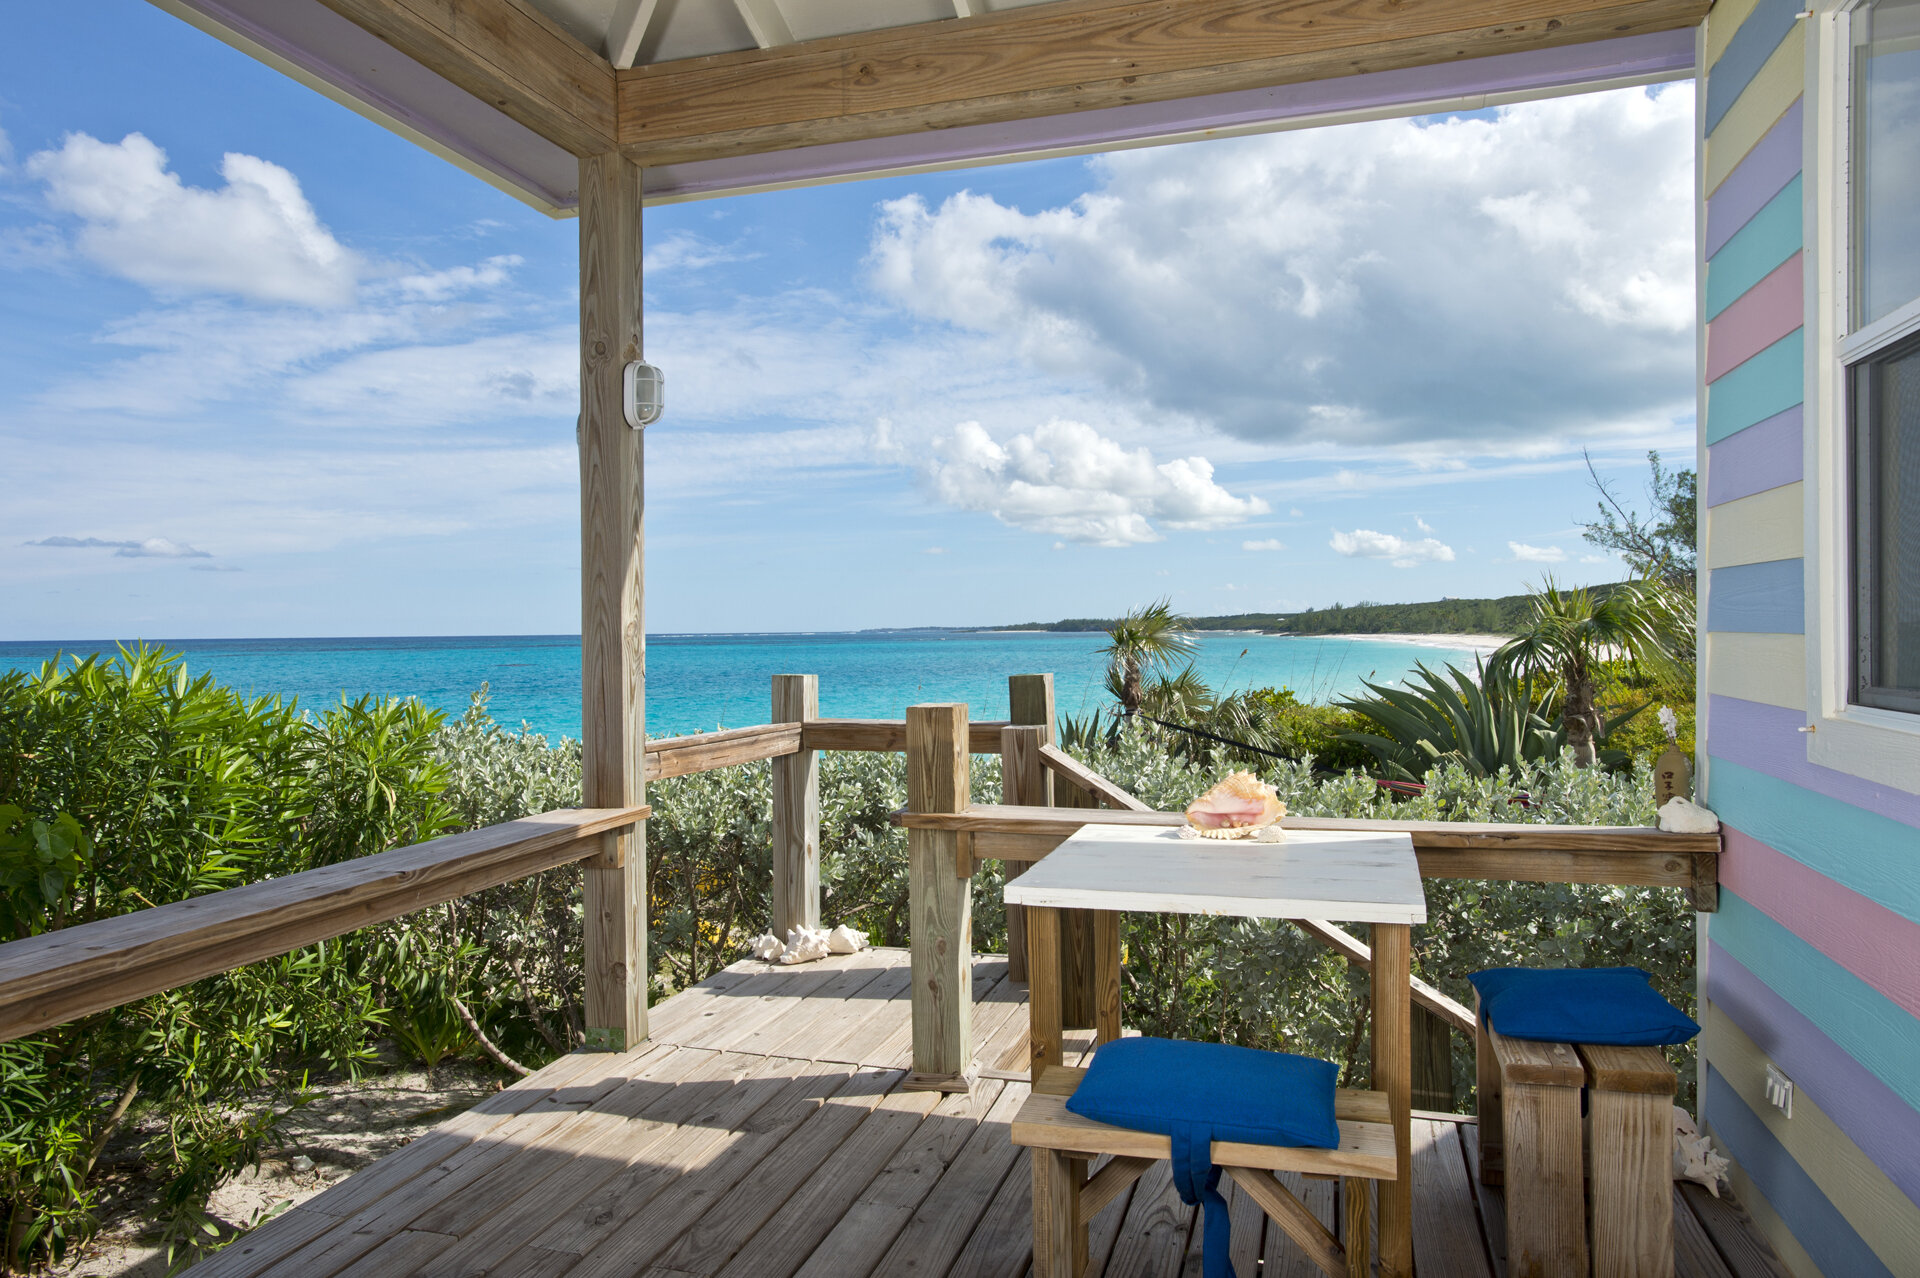 Deck for dining beachfront on the Atlantic Ocean!.jpg